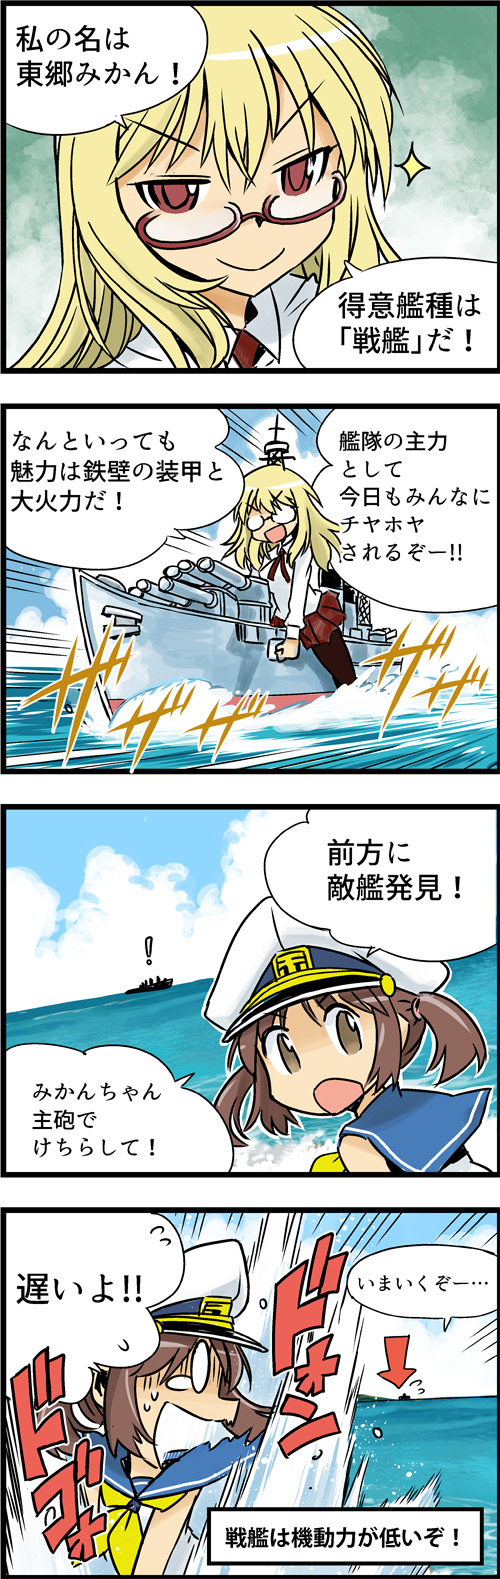 週刊 ぷかぷか艦隊 Vol 1 World Of Warships